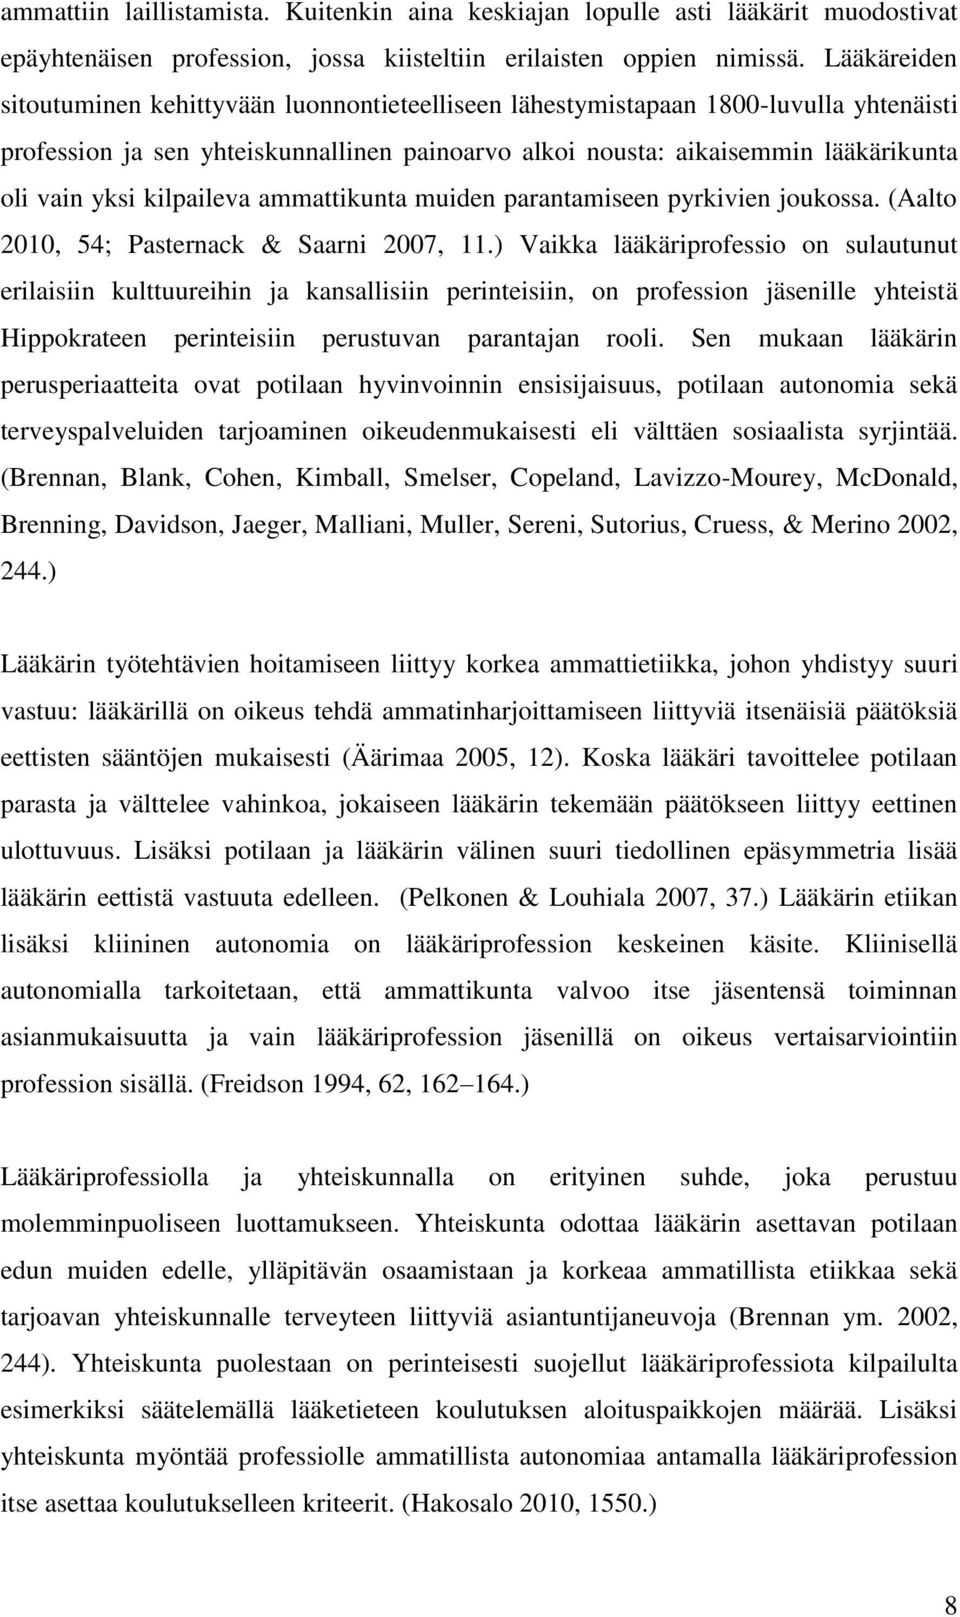 kilpaileva ammattikunta muiden parantamiseen pyrkivien joukossa. (Aalto 2010, 54; Pasternack & Saarni 2007, 11.